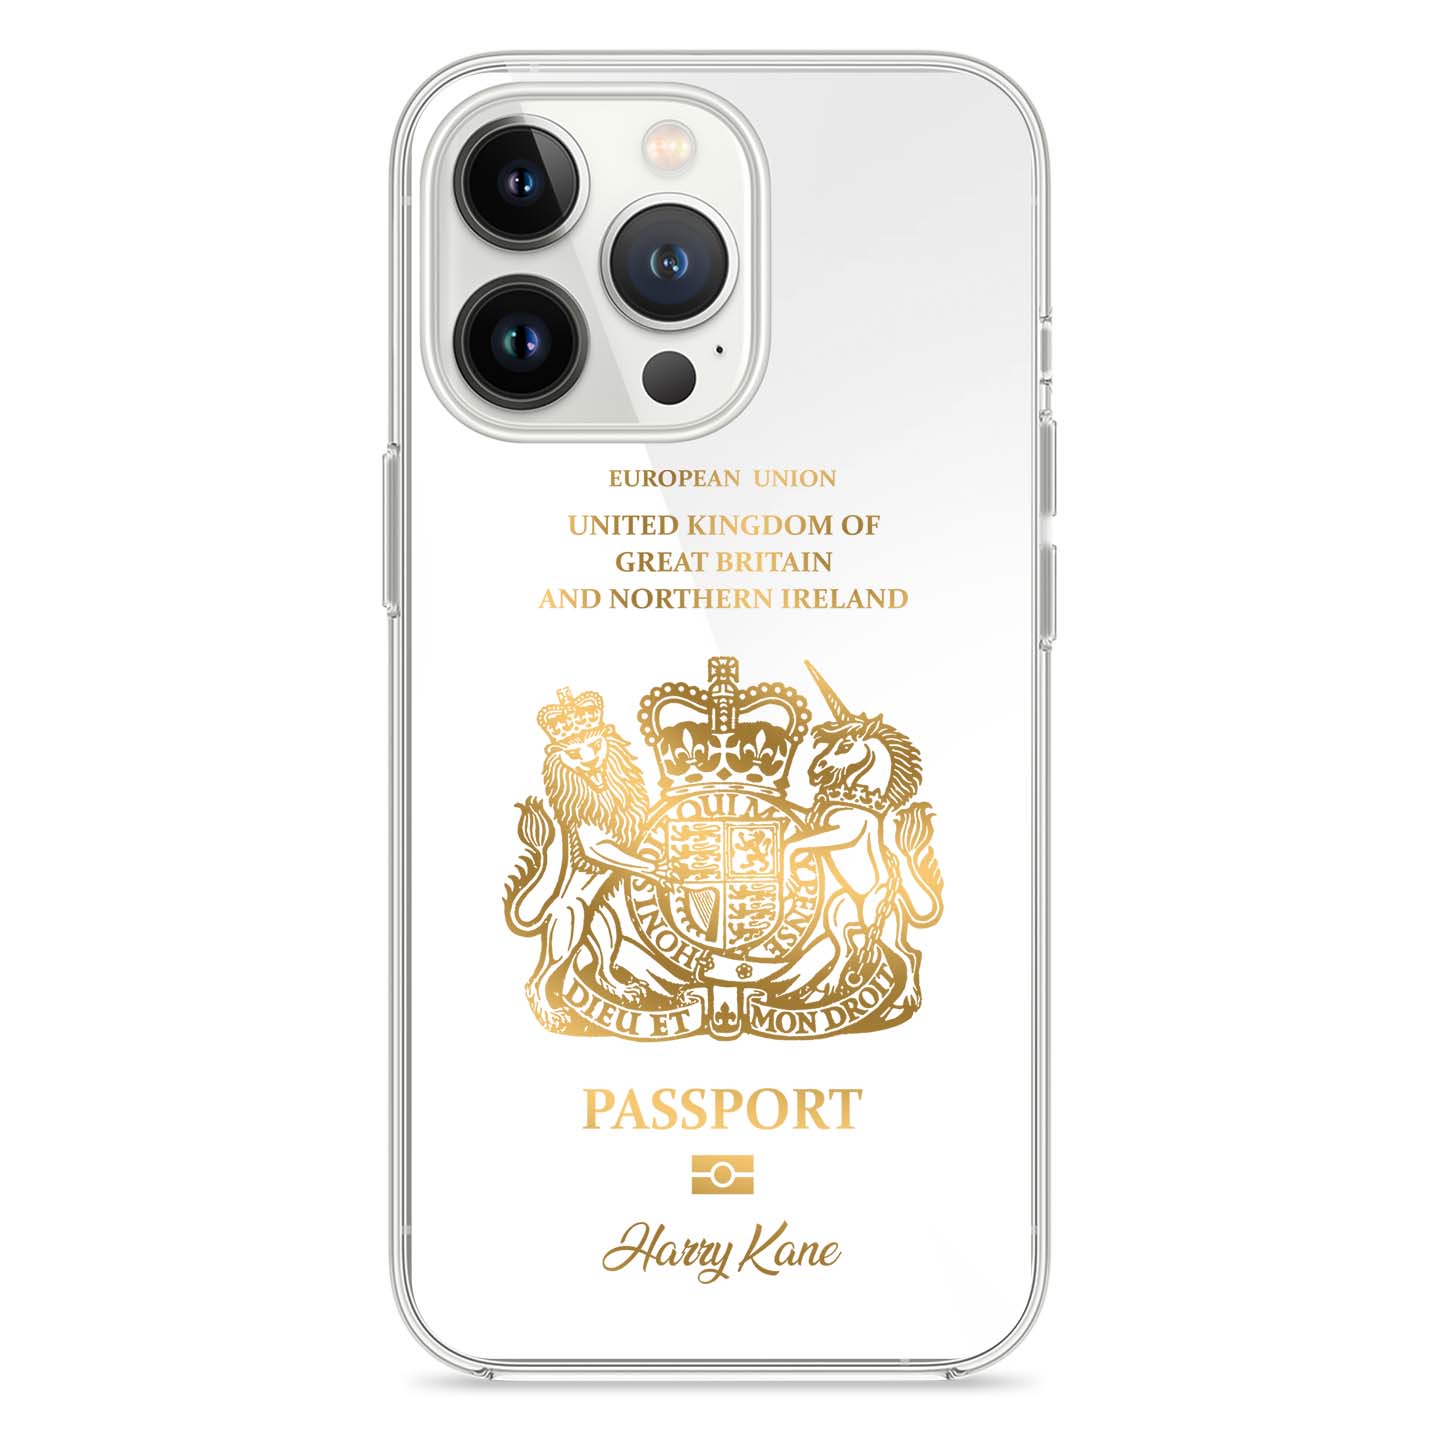 Handyhüllen mit Reisepass - Vereinigtes Königreich ( UK ) - 1instaphone